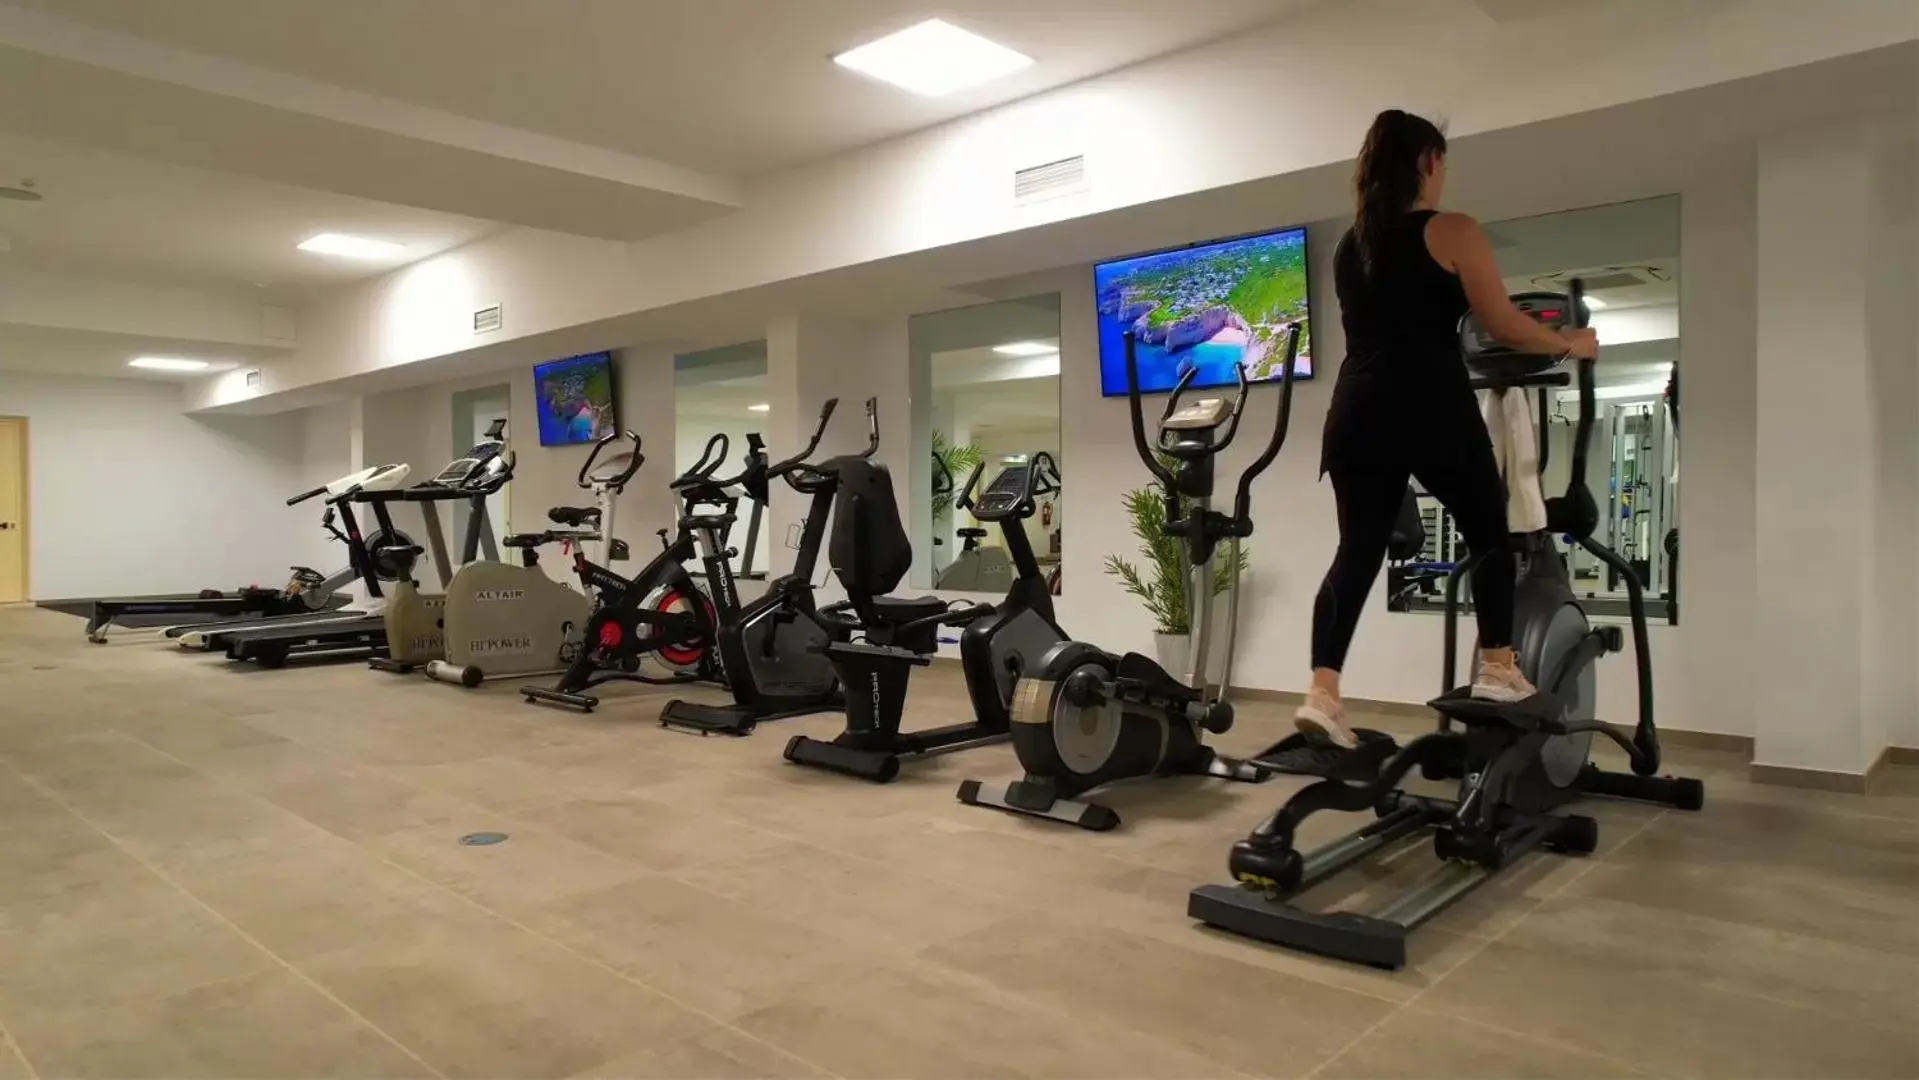 Fitness centre/facilities, Fitness Center/Facilities in Hotel Rural Brícia Du Mar